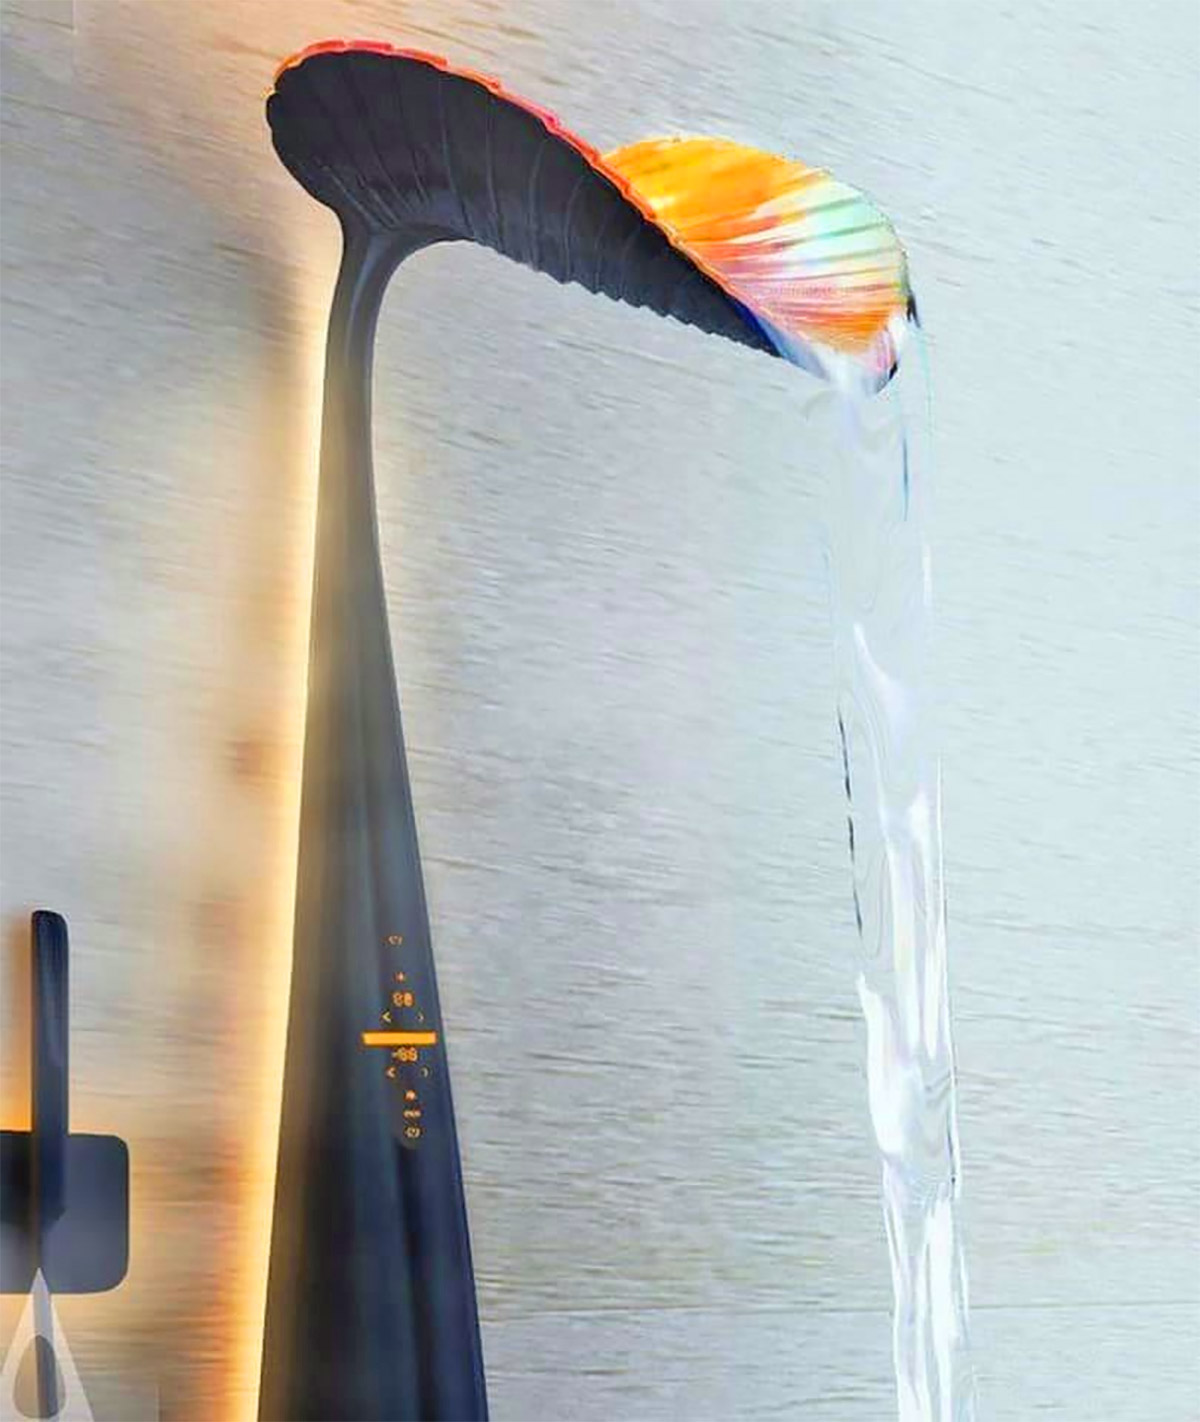 Ora Leaf-Shaped Shower Panel - Unique design shower panel saves water